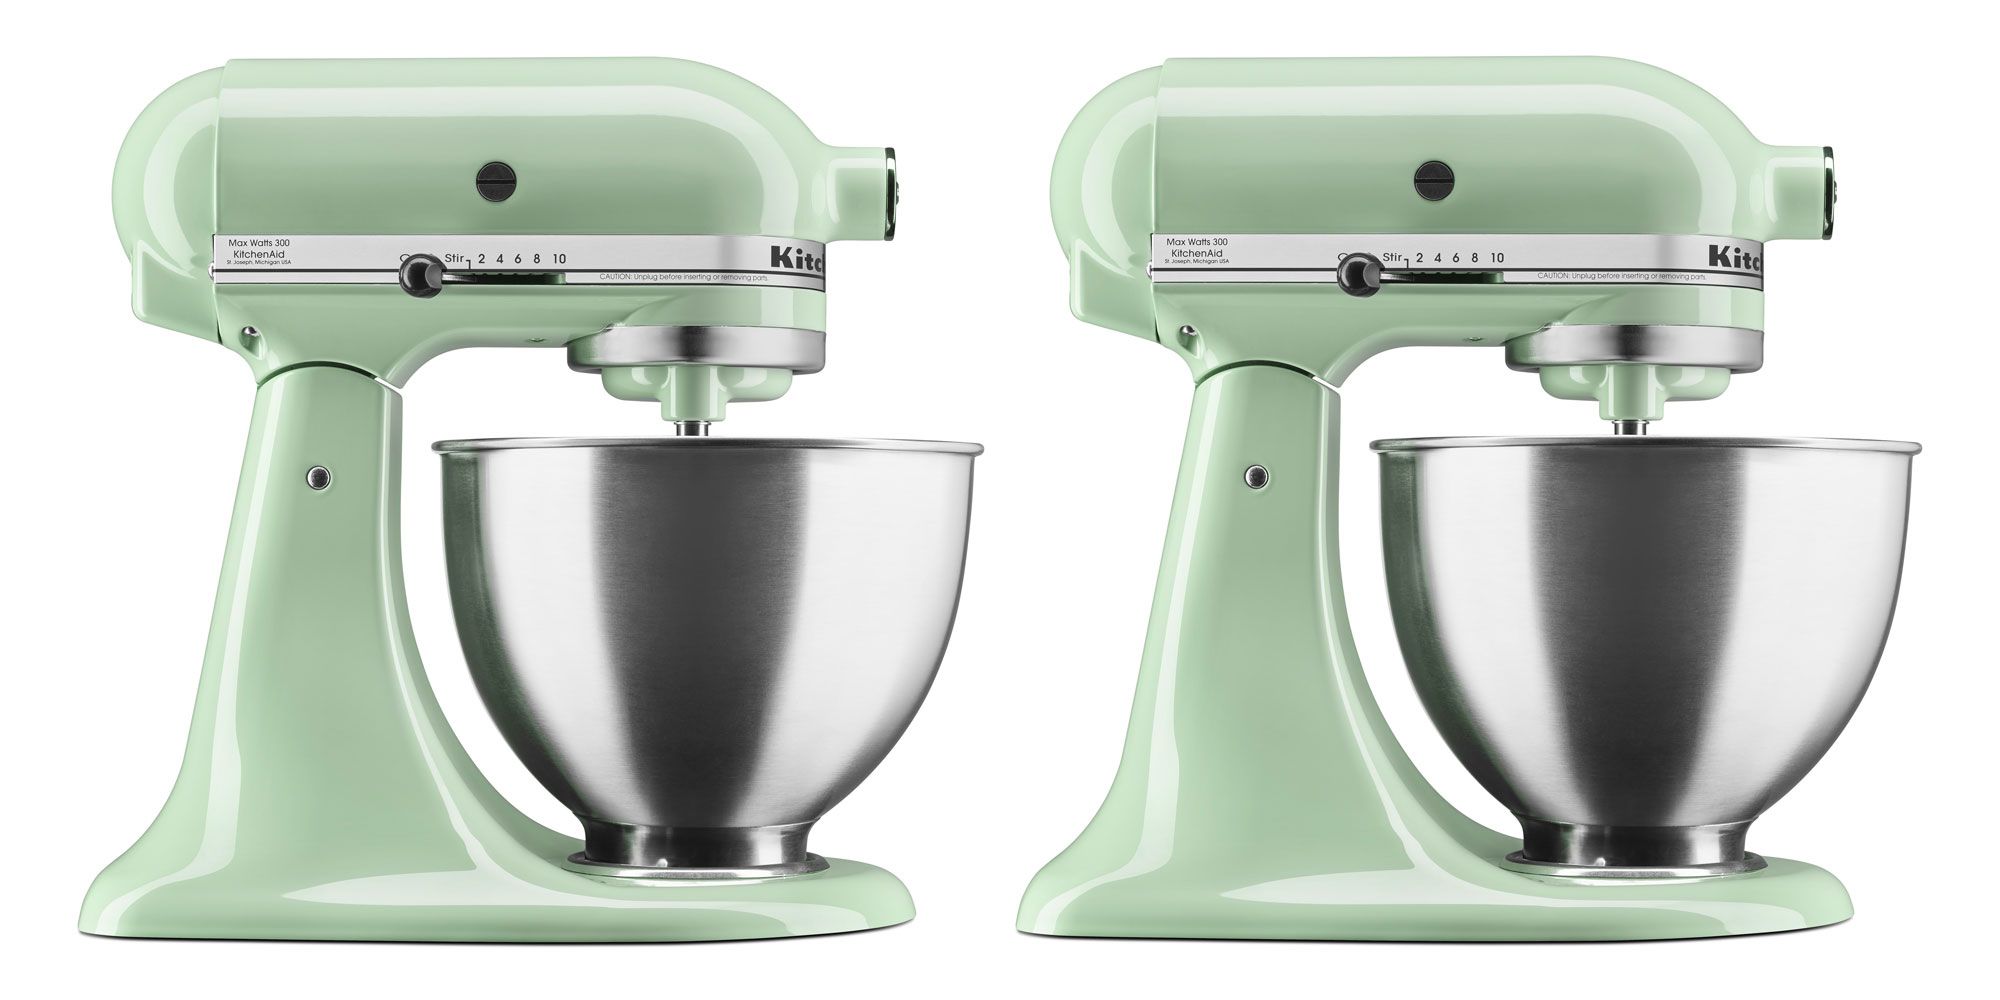 KitchenAid Green Mixer Color Comparison - Green Apple, Pistachio